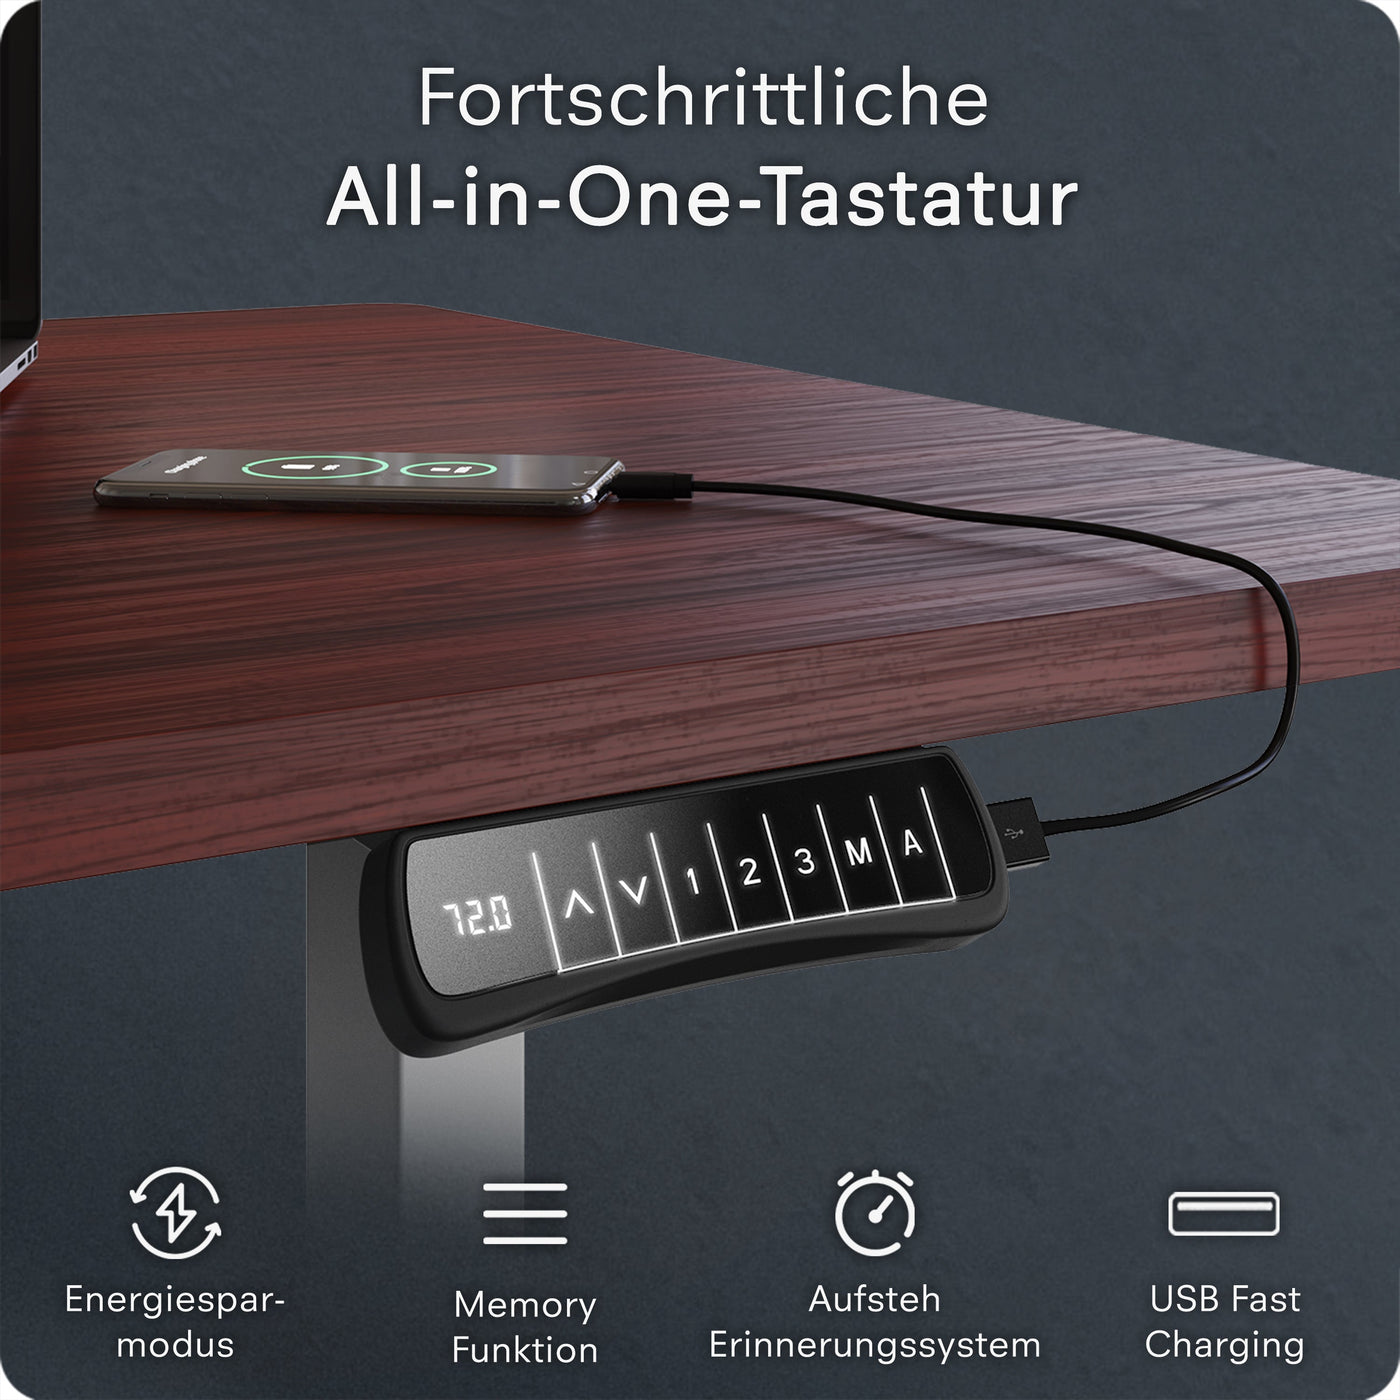 DESQUP CORNER | Electrically height-adjustable corner desk frame 